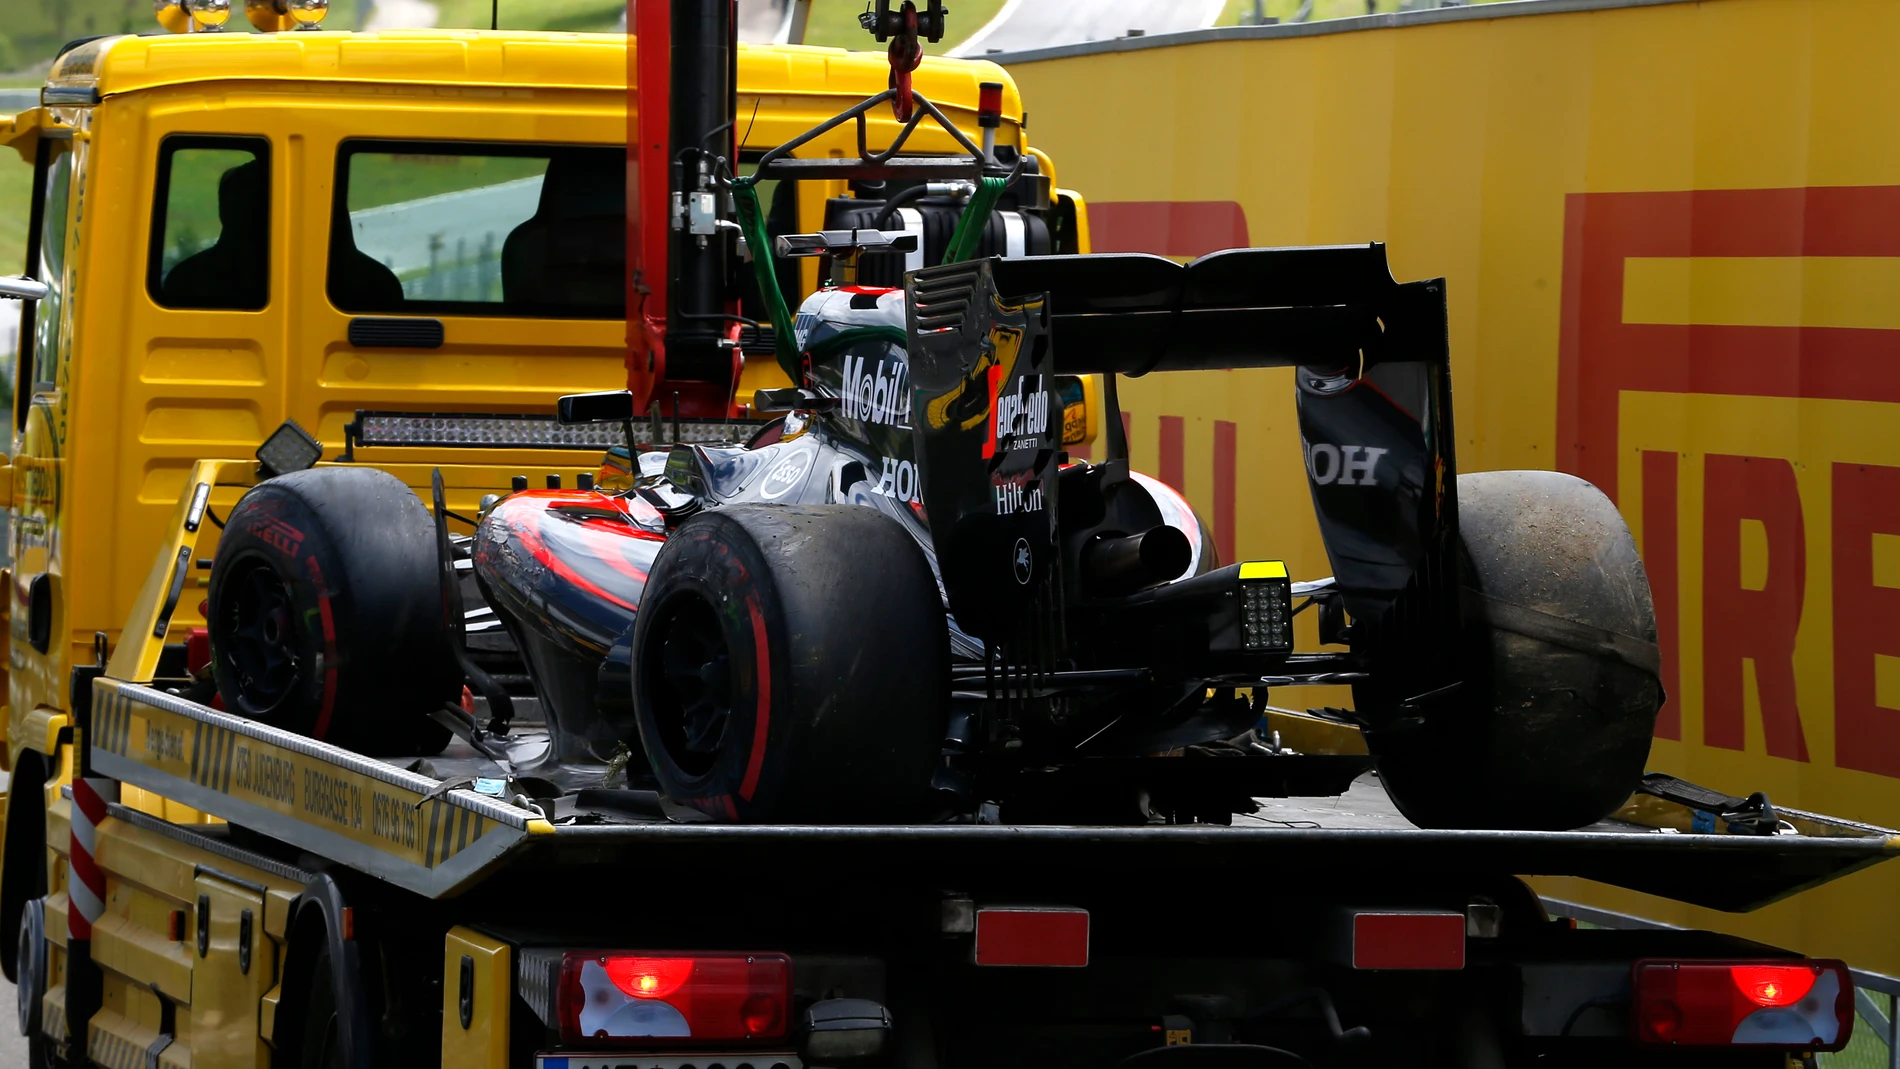 El McLaren MP4-30 de Alonso accidentado en Spielberg